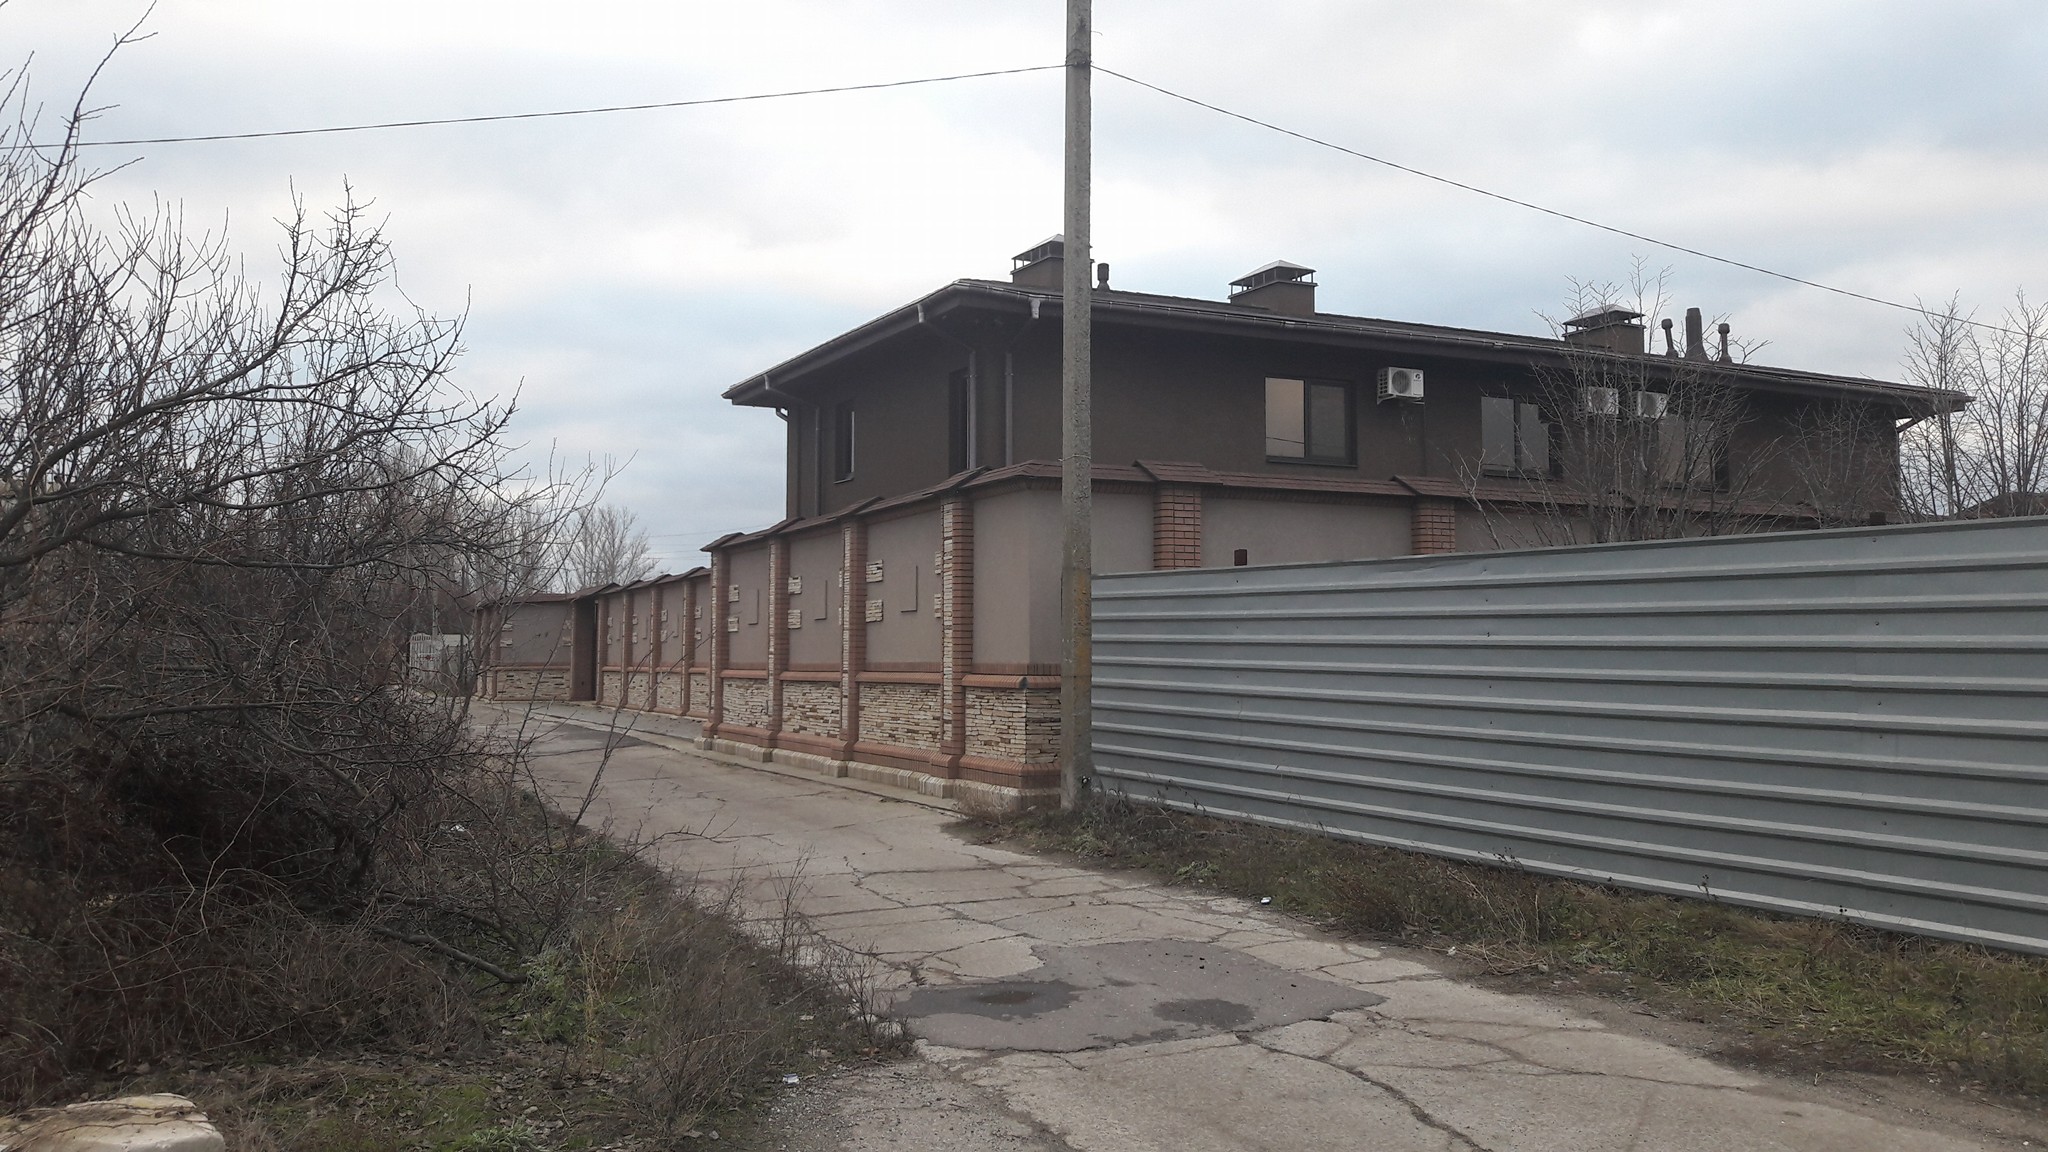 Як виглядає будинок колишнього голови Луганщини у Щасті? (ФОТО)